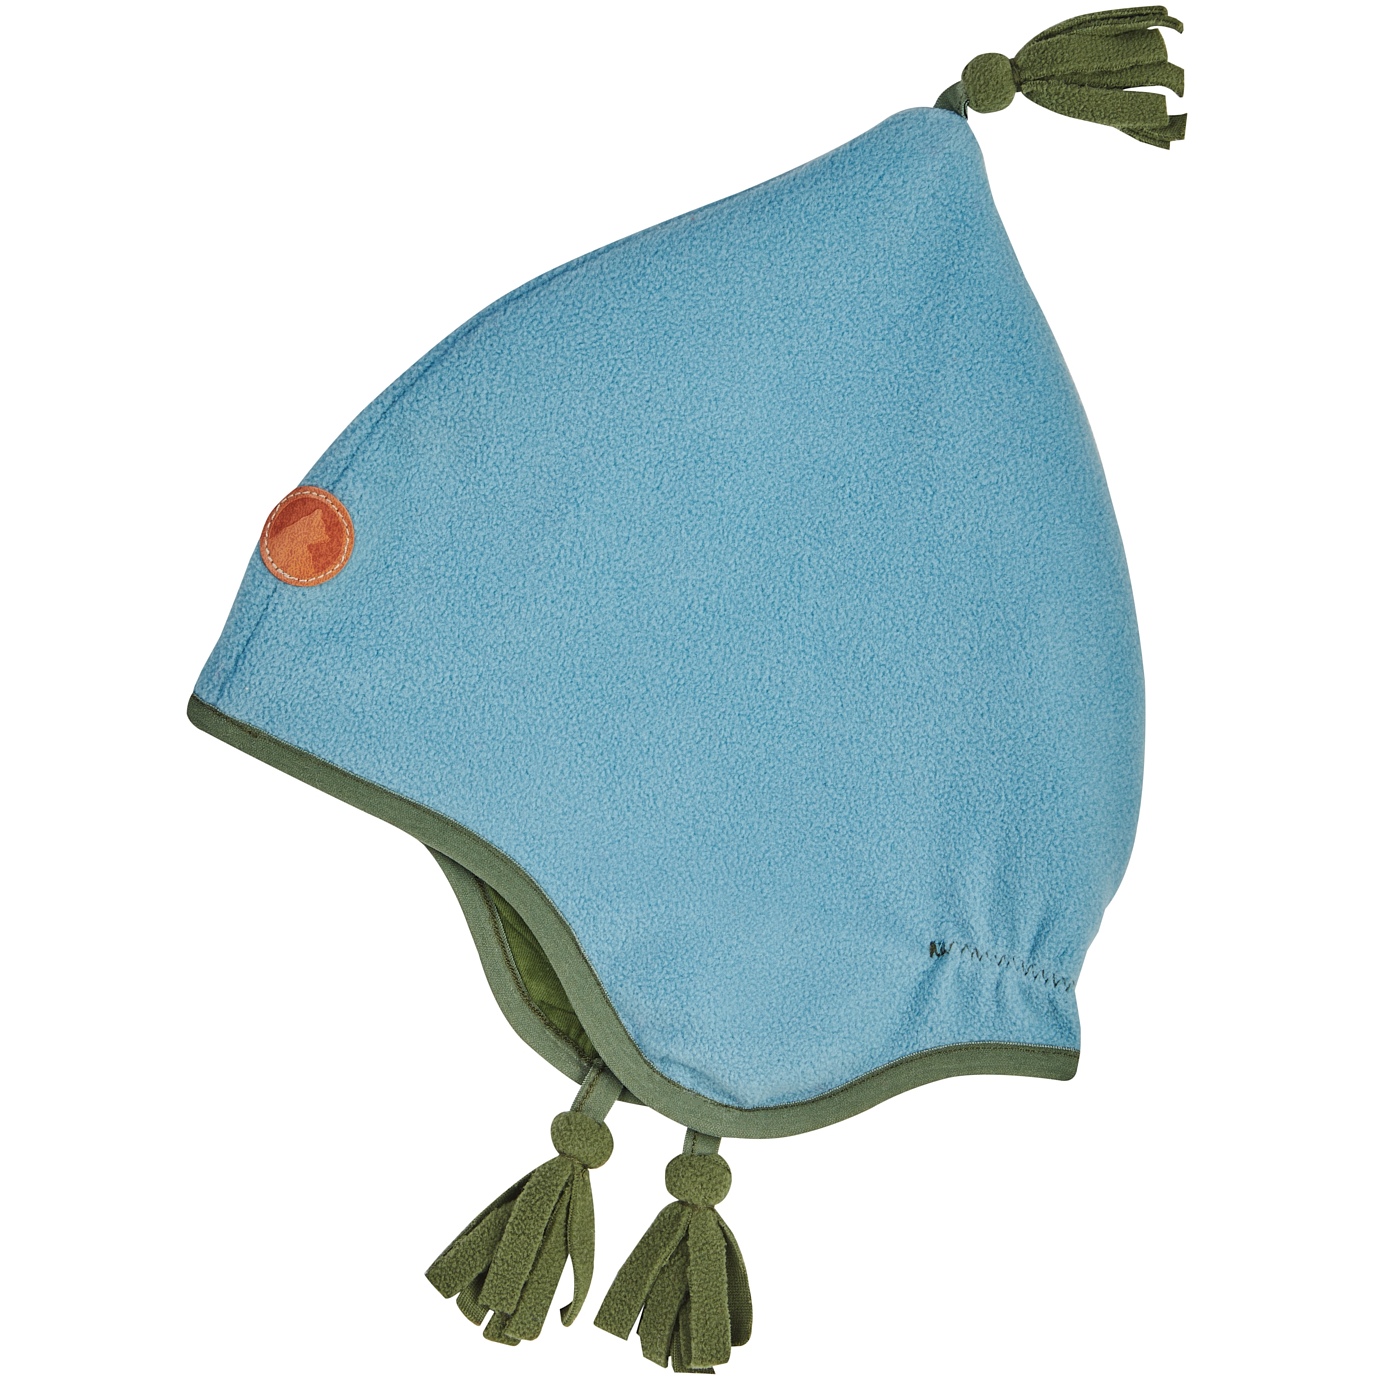 Produktbild von Finkid PIPO Fleece-Zipfelmütze Kinder - smoke blue/bronze green